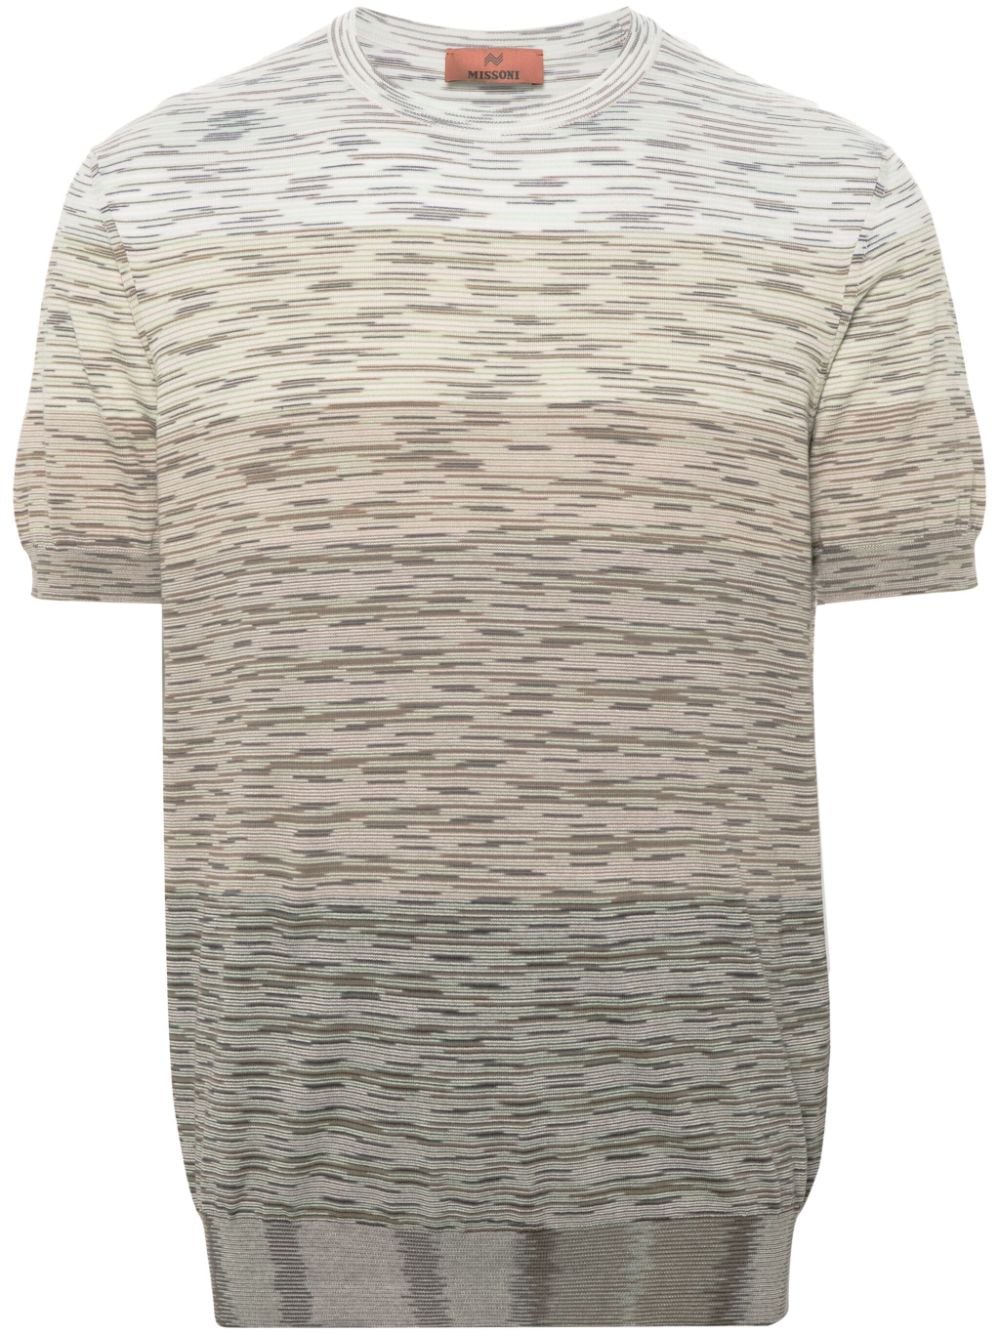 Missoni MISSONI- Tie-dye Print Cotton T-shirt